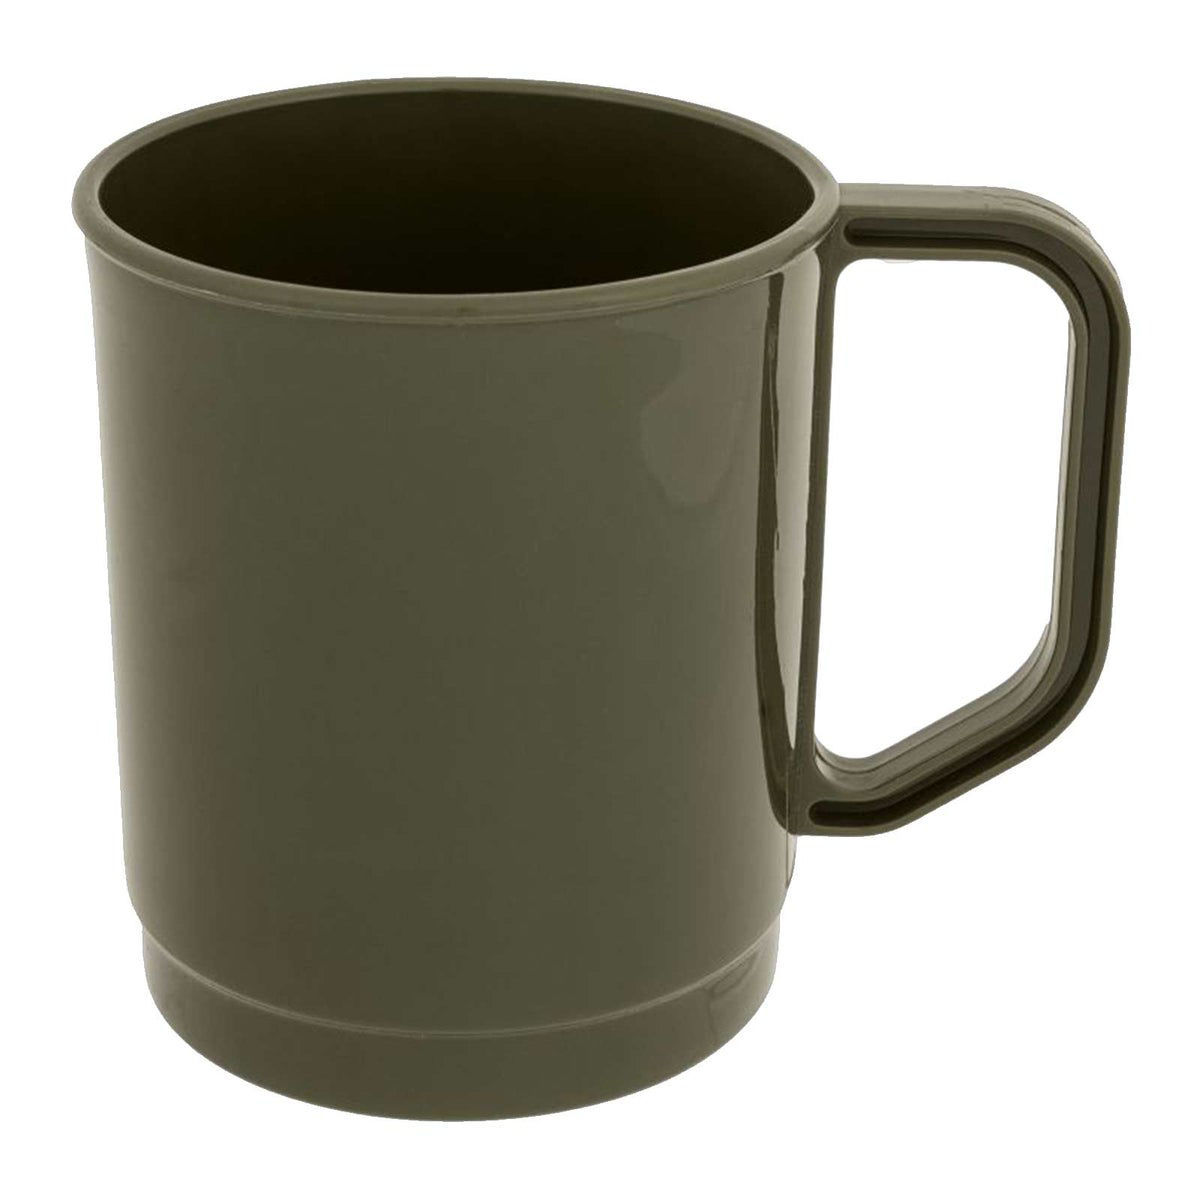 Highlander Polypropylene Mug in Olive